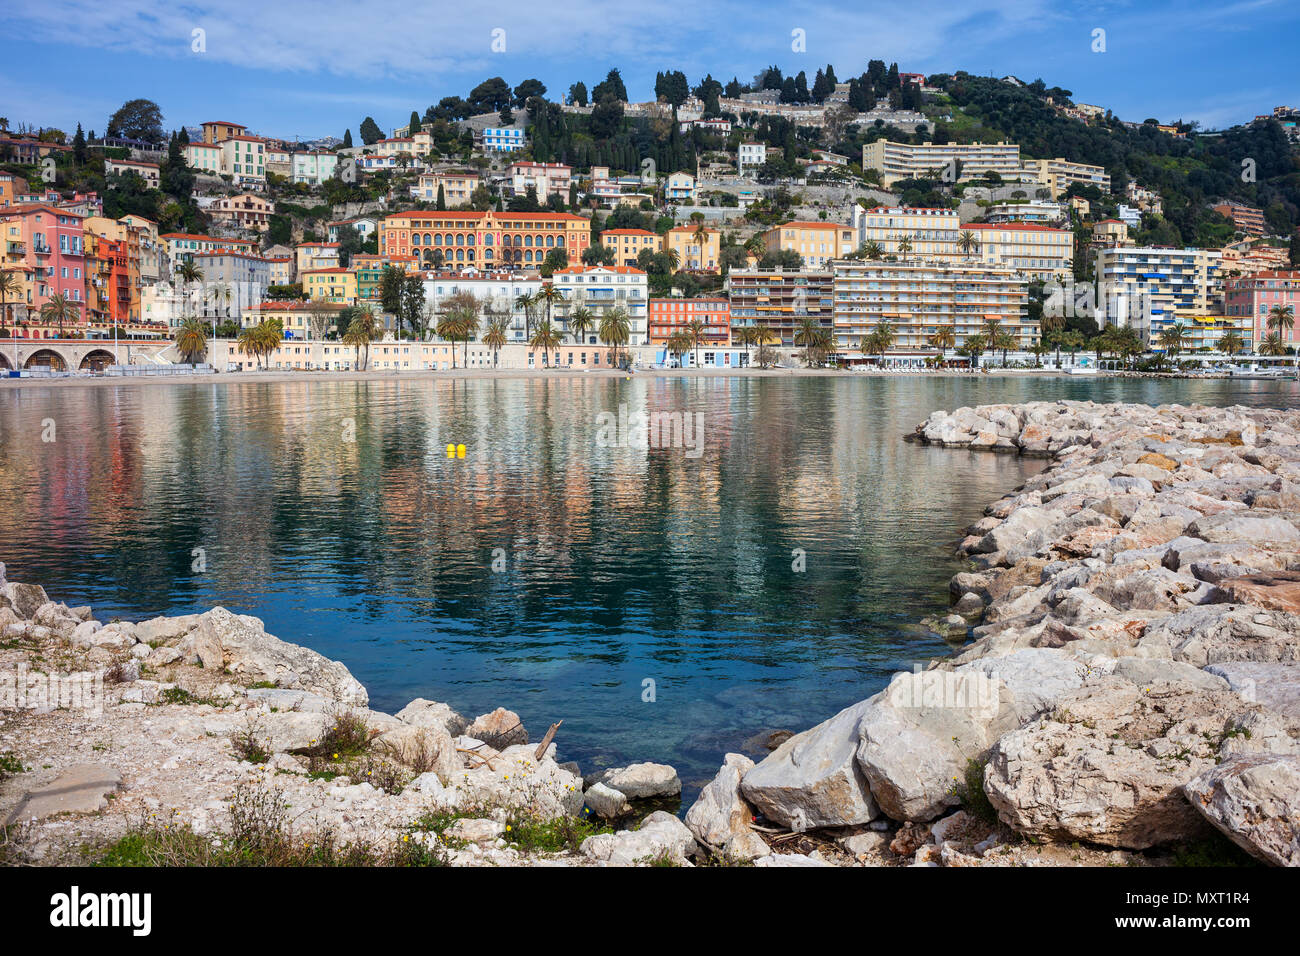 La città di Mentone in Francia Costa Azzurra - Cote d'Azur, resort sul Mar Mediterraneo Foto Stock